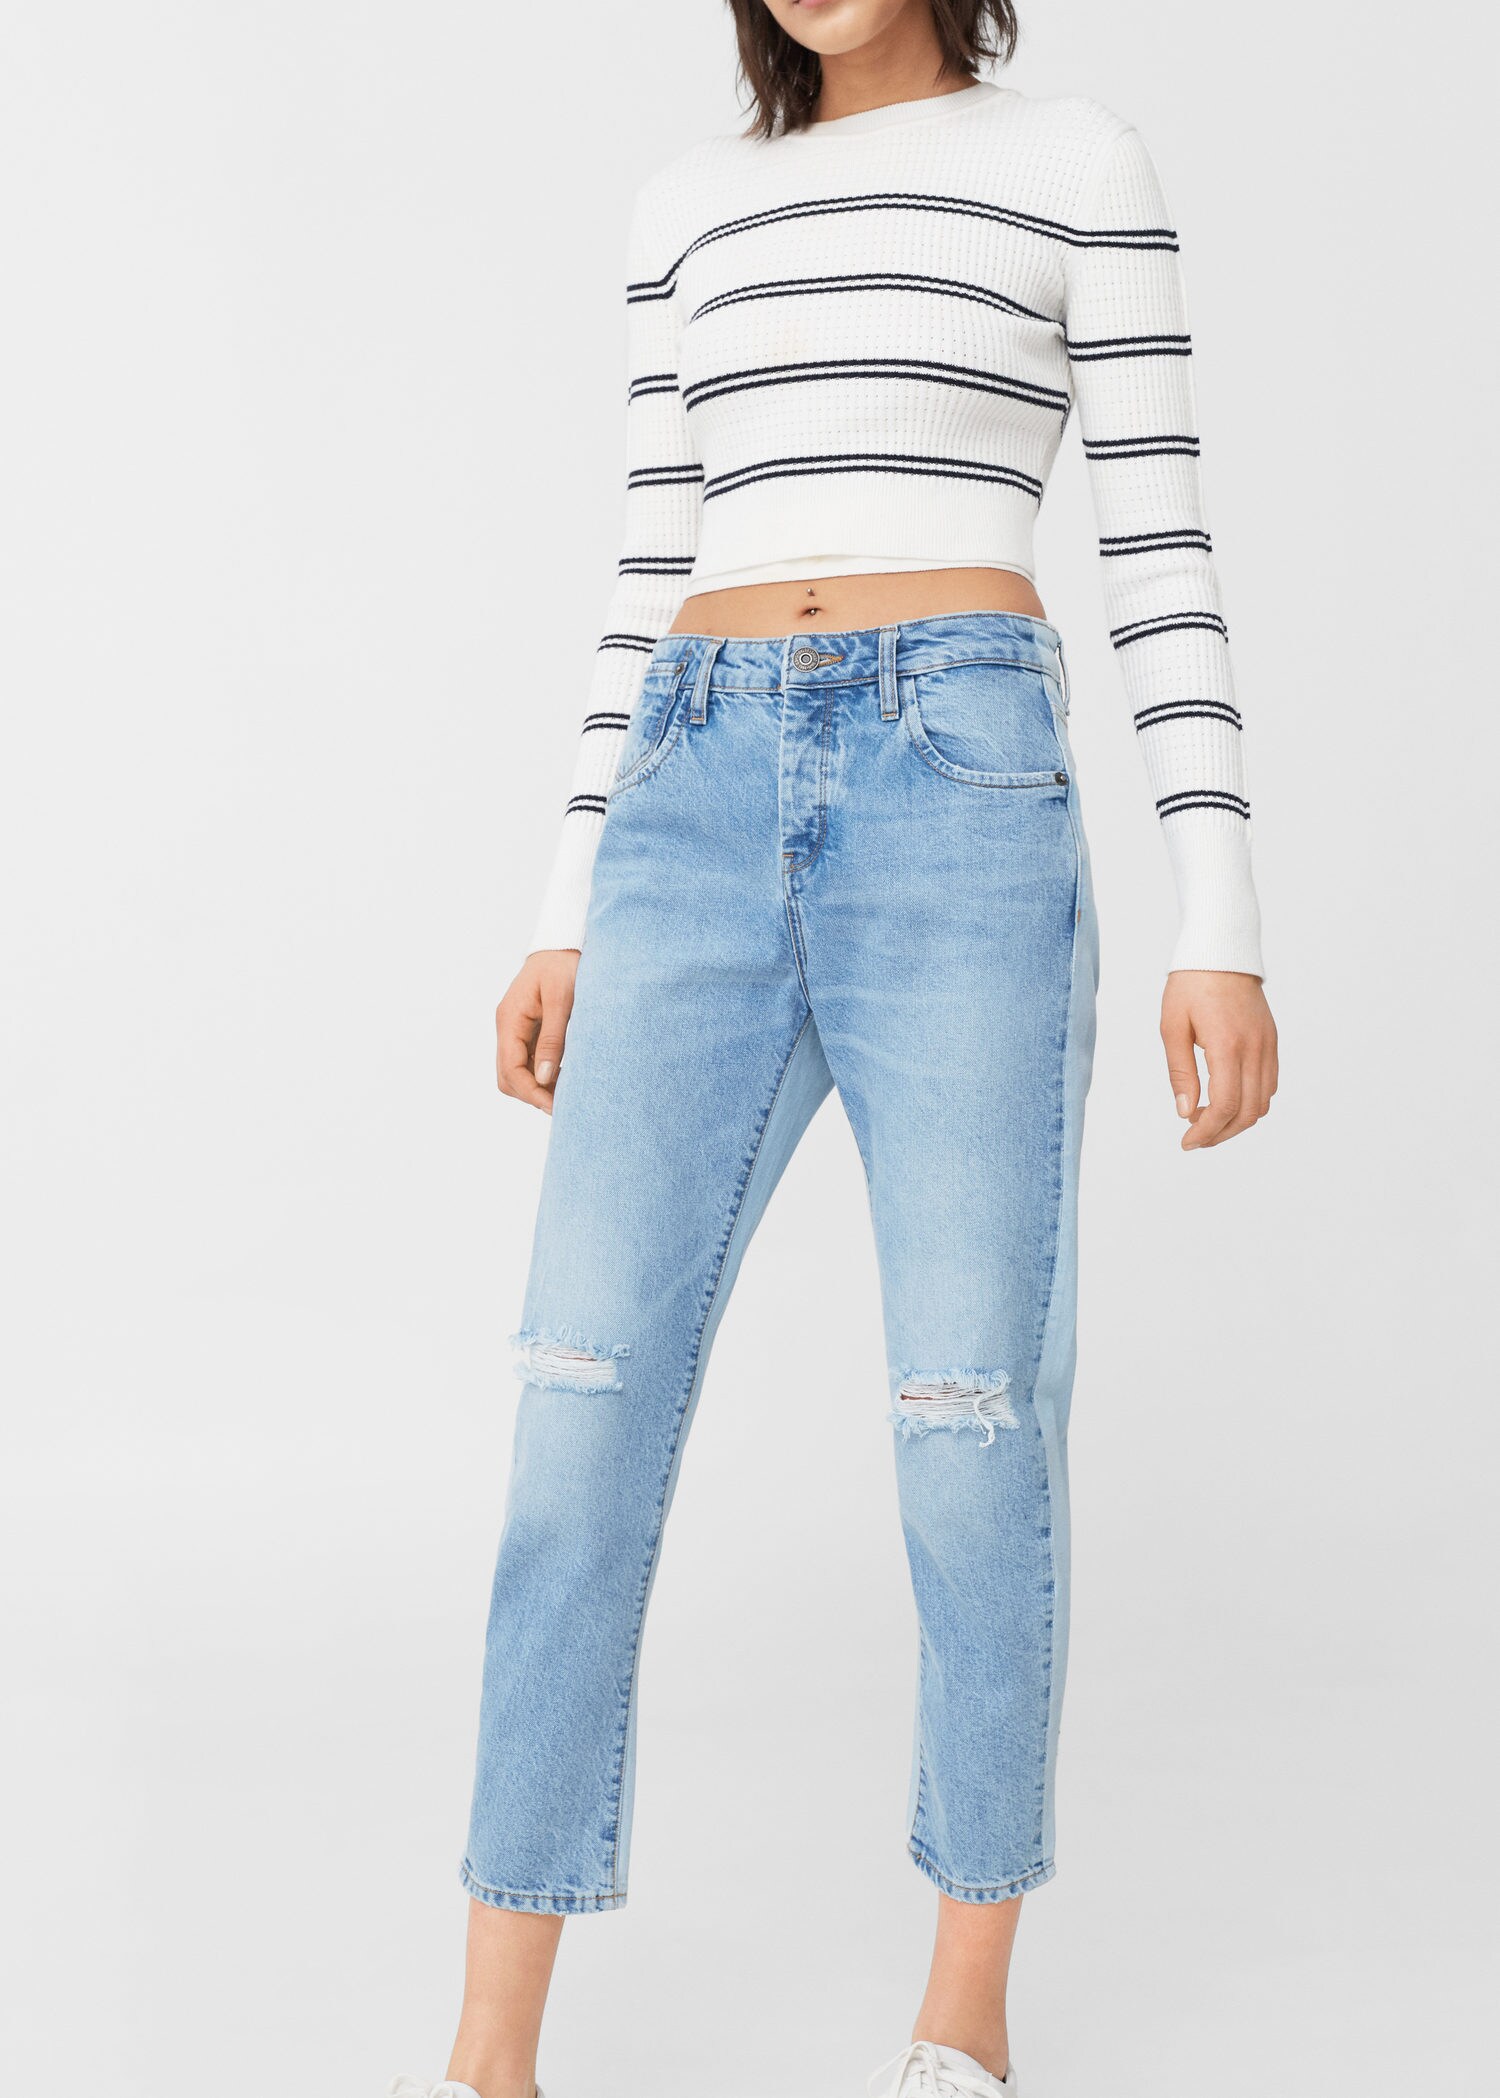 size 0 fashion nova jeans